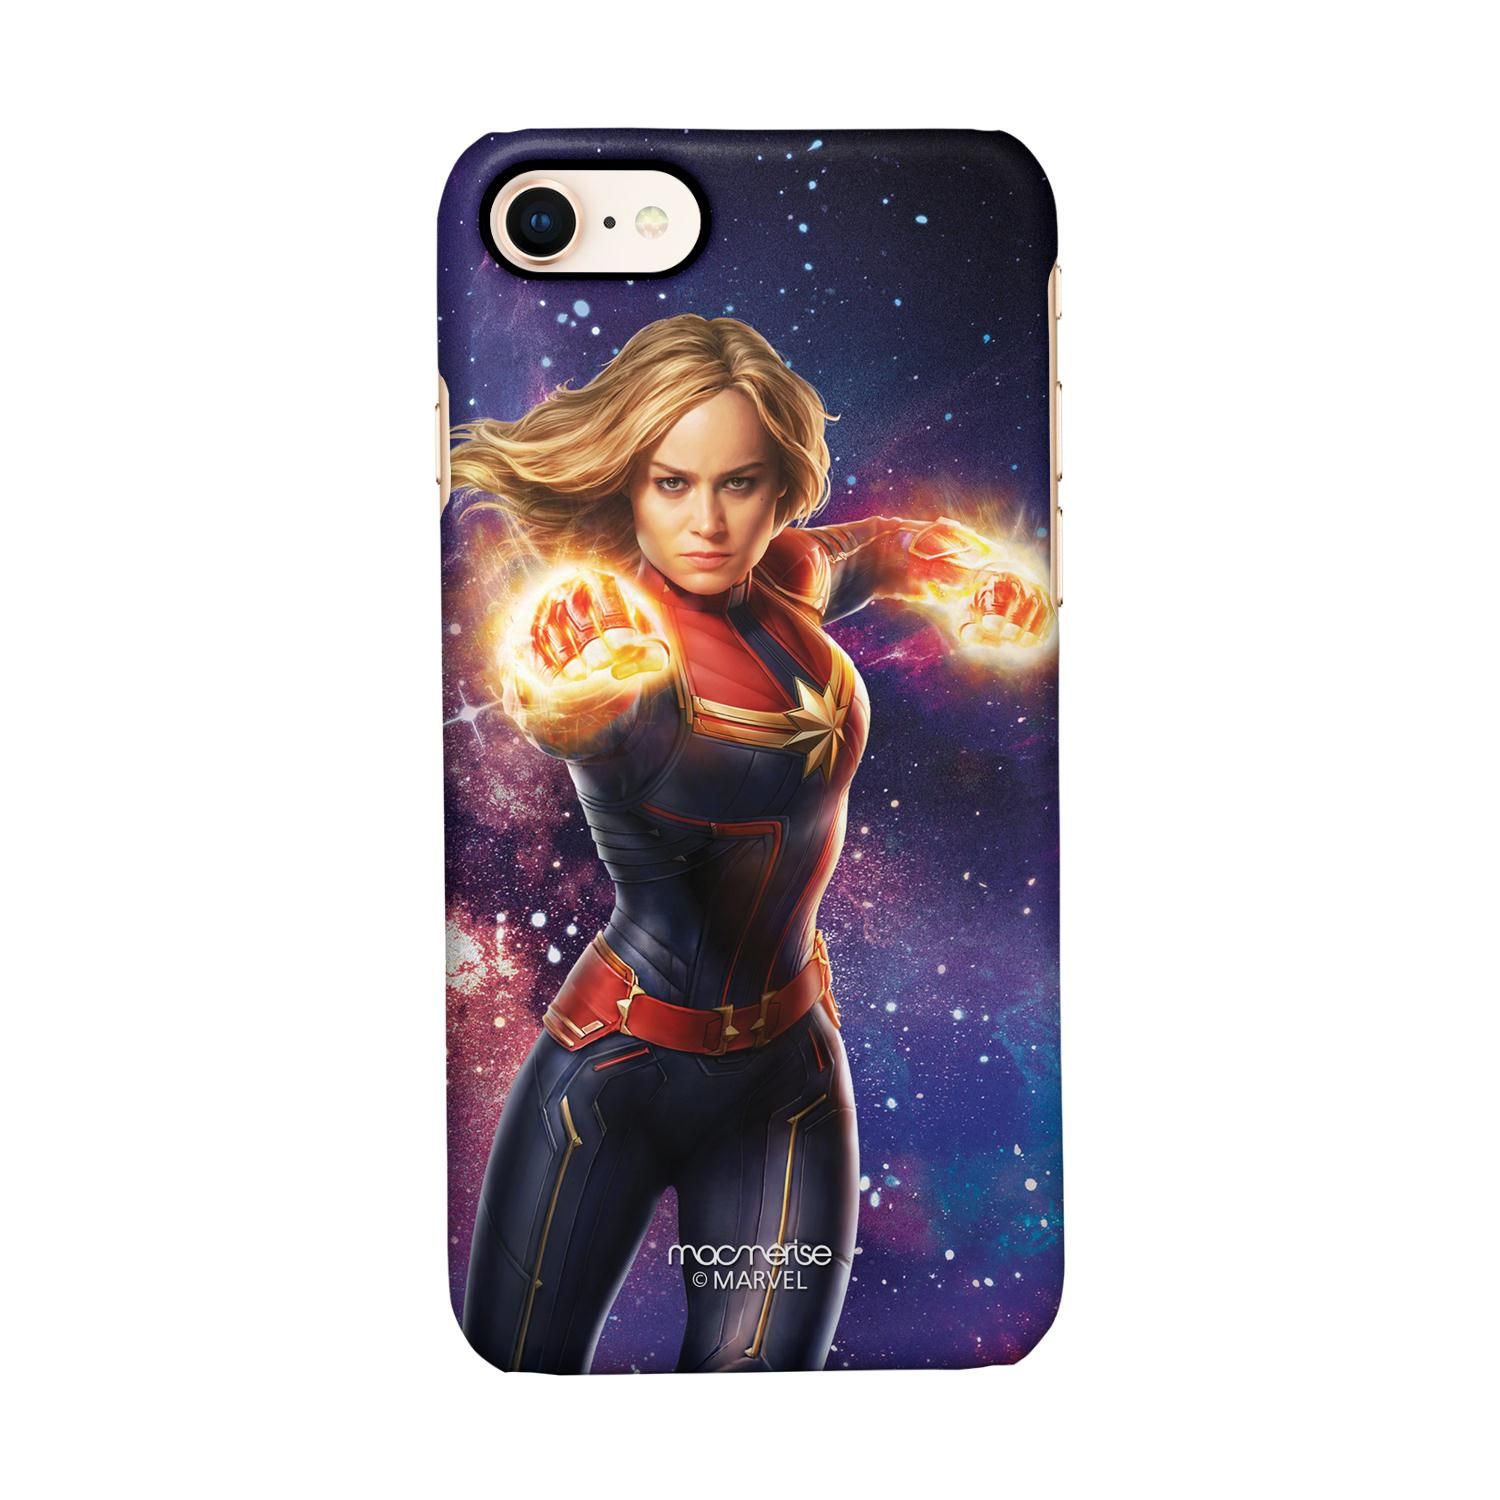 Buy Fierce Captain Marvel - Sleek Phone Case for iPhone 8 Online